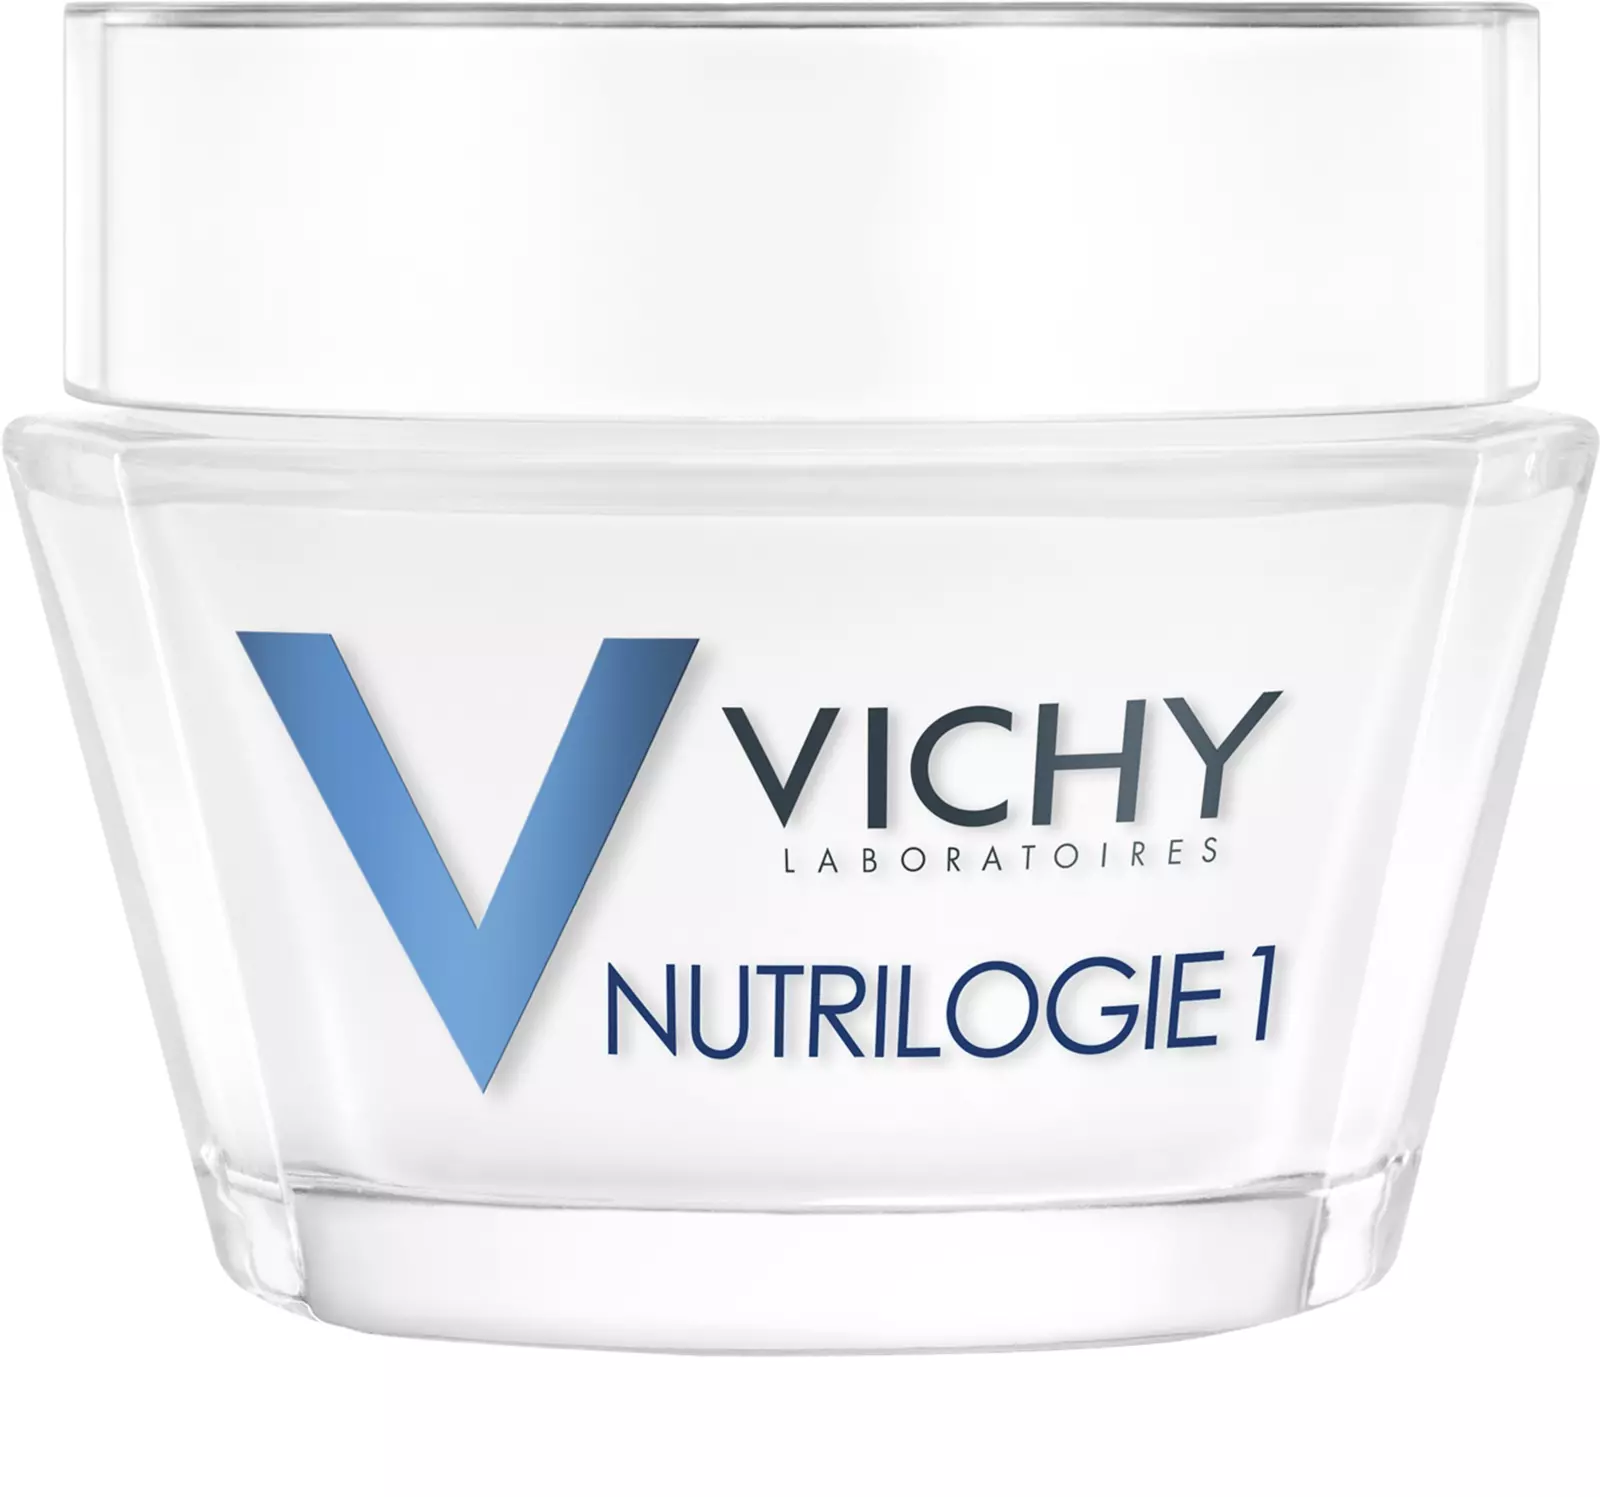 VICHY Nutrilogie 1 Intenzíven Tápláló Arckrém Száraz Bőrre (50ml)